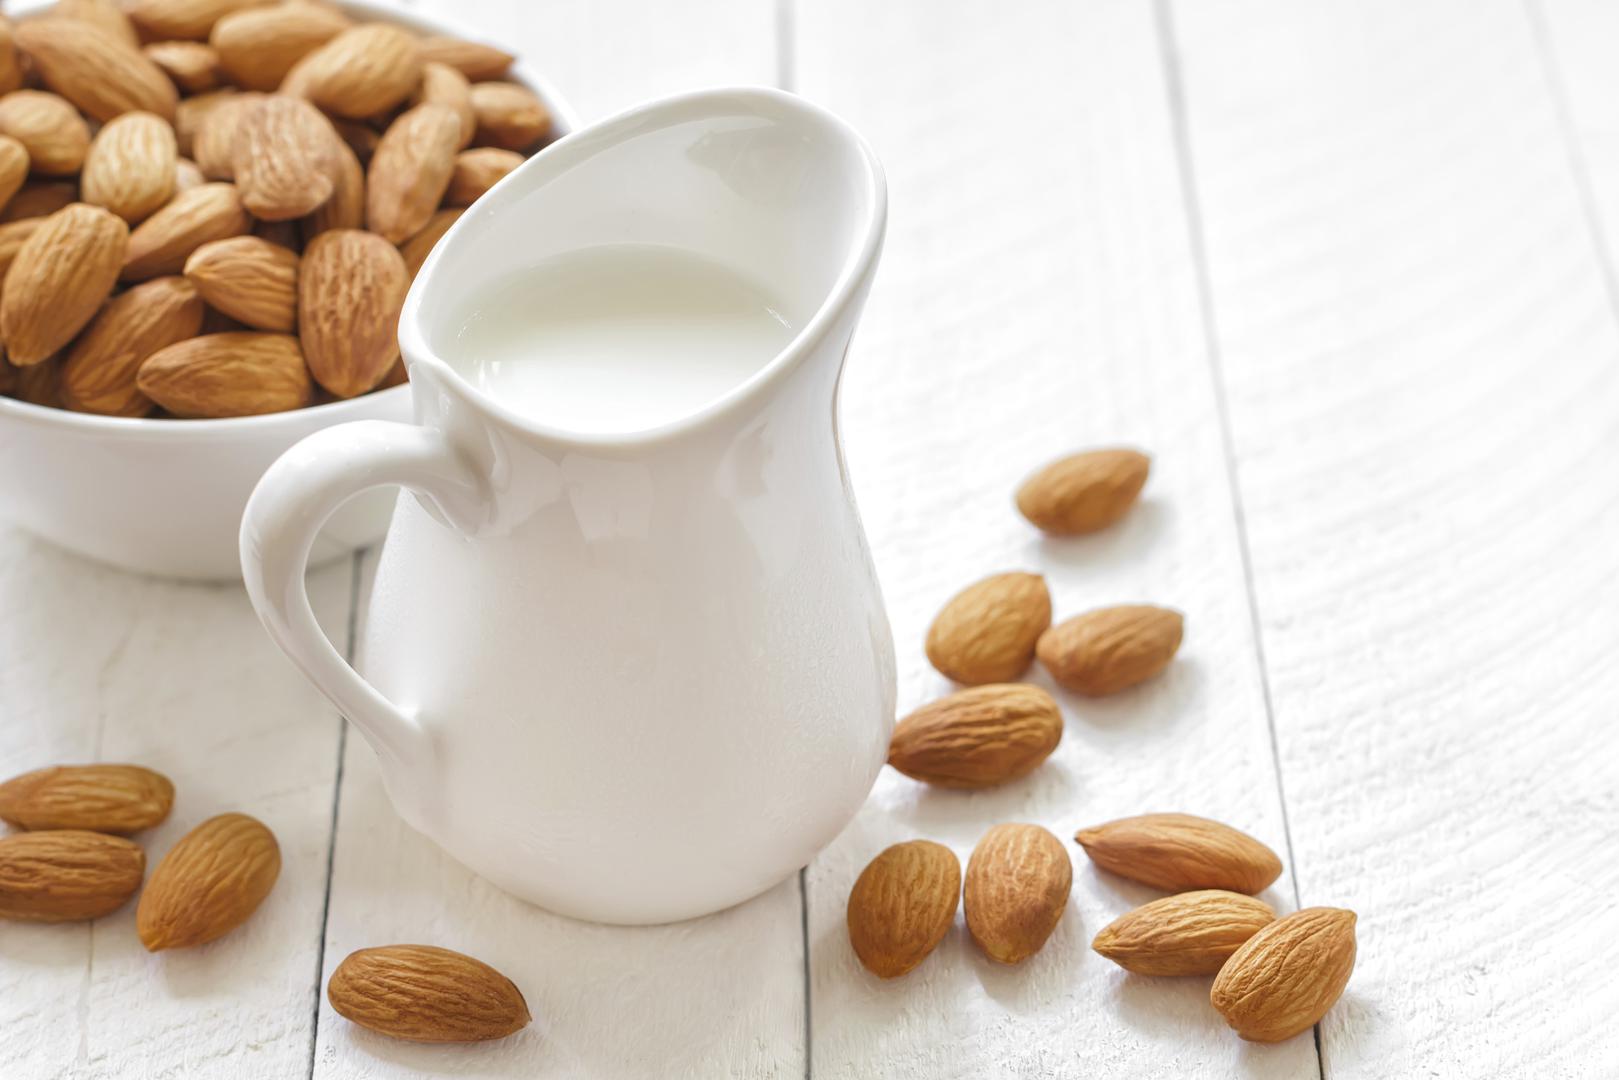 Znanstvenici su proučavali kako proteini iz mlijeka djeluju na razinu šećera u krvi kod sudionika tijekom dana i osjećaj sitosti. 